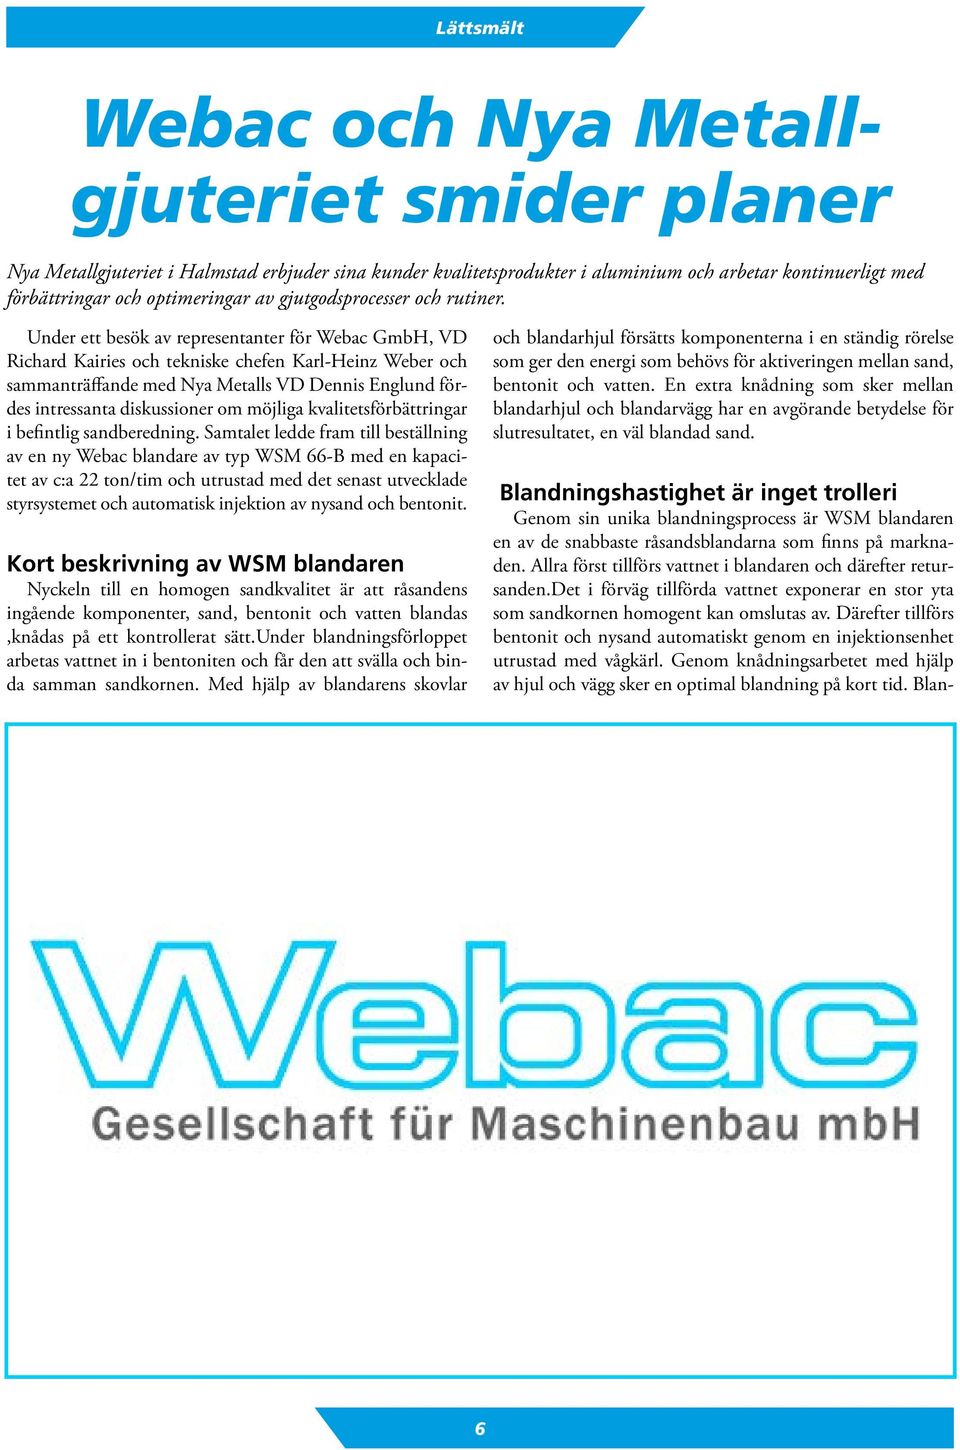 Under ett besök av representanter för Webac GmbH, VD Richard Kairies och tekniske chefen Karl-Heinz Weber och sammanträffande med Nya Metalls VD Dennis Englund fördes intressanta diskussioner om